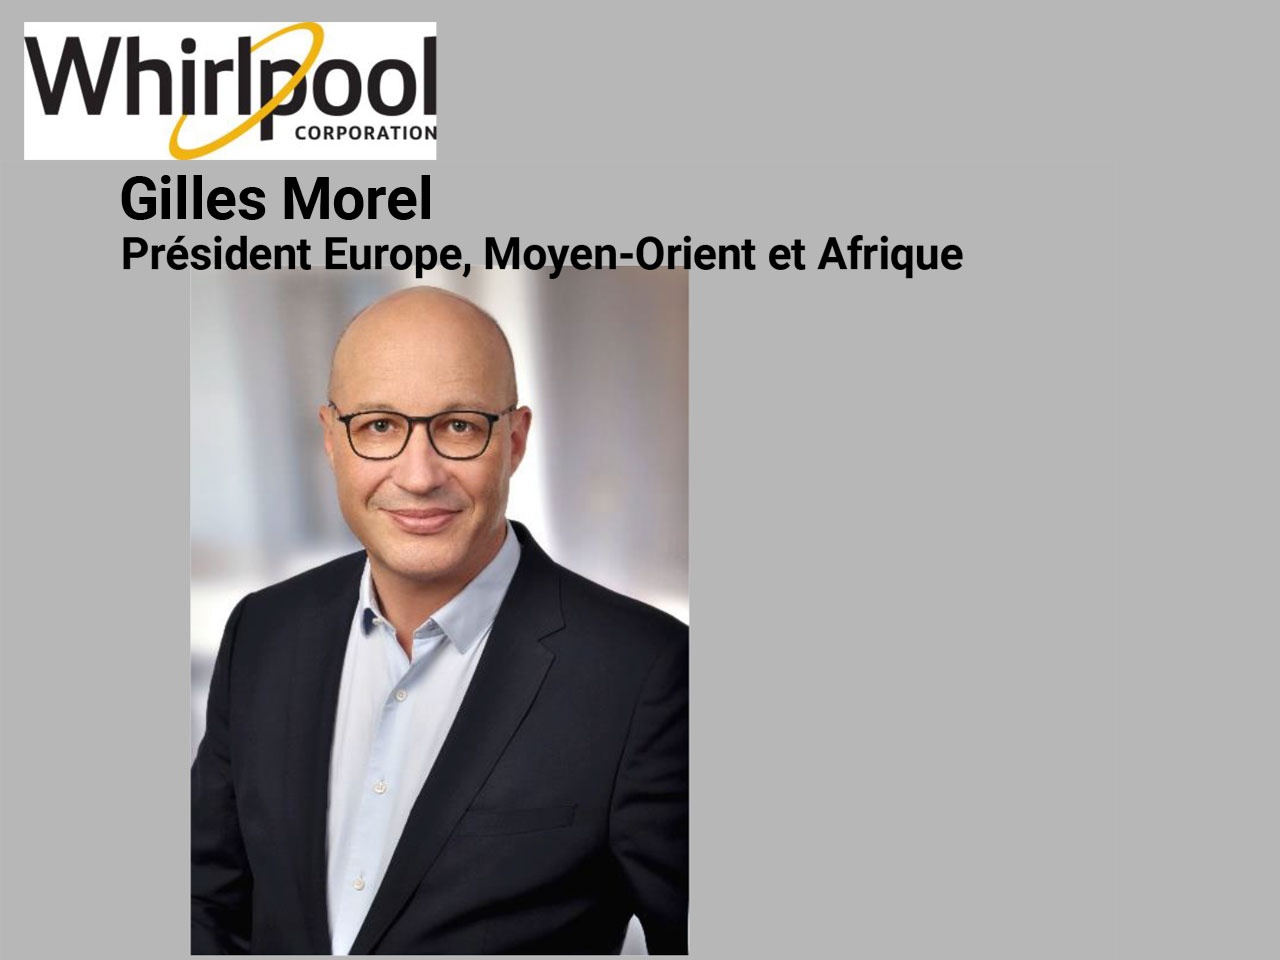 Whirlpool Corporation : Gilles Morel nommé Président Europe, Moyen-Orient et Afrique